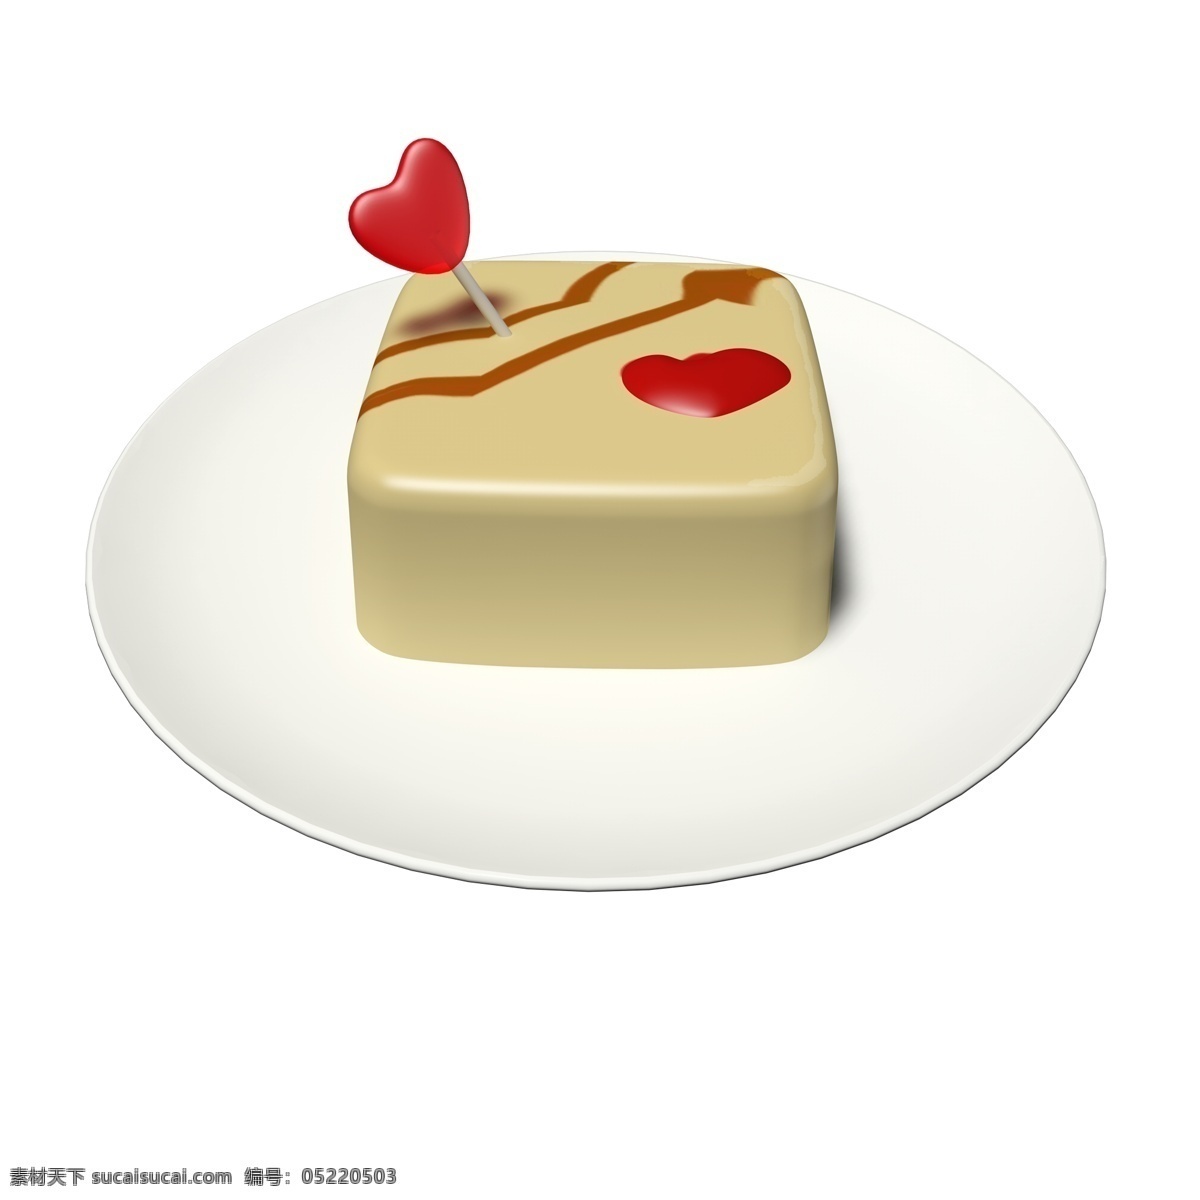 彩色 立体 食品 通用 元素 巧克力 爱心 糖果 蛋糕 红色